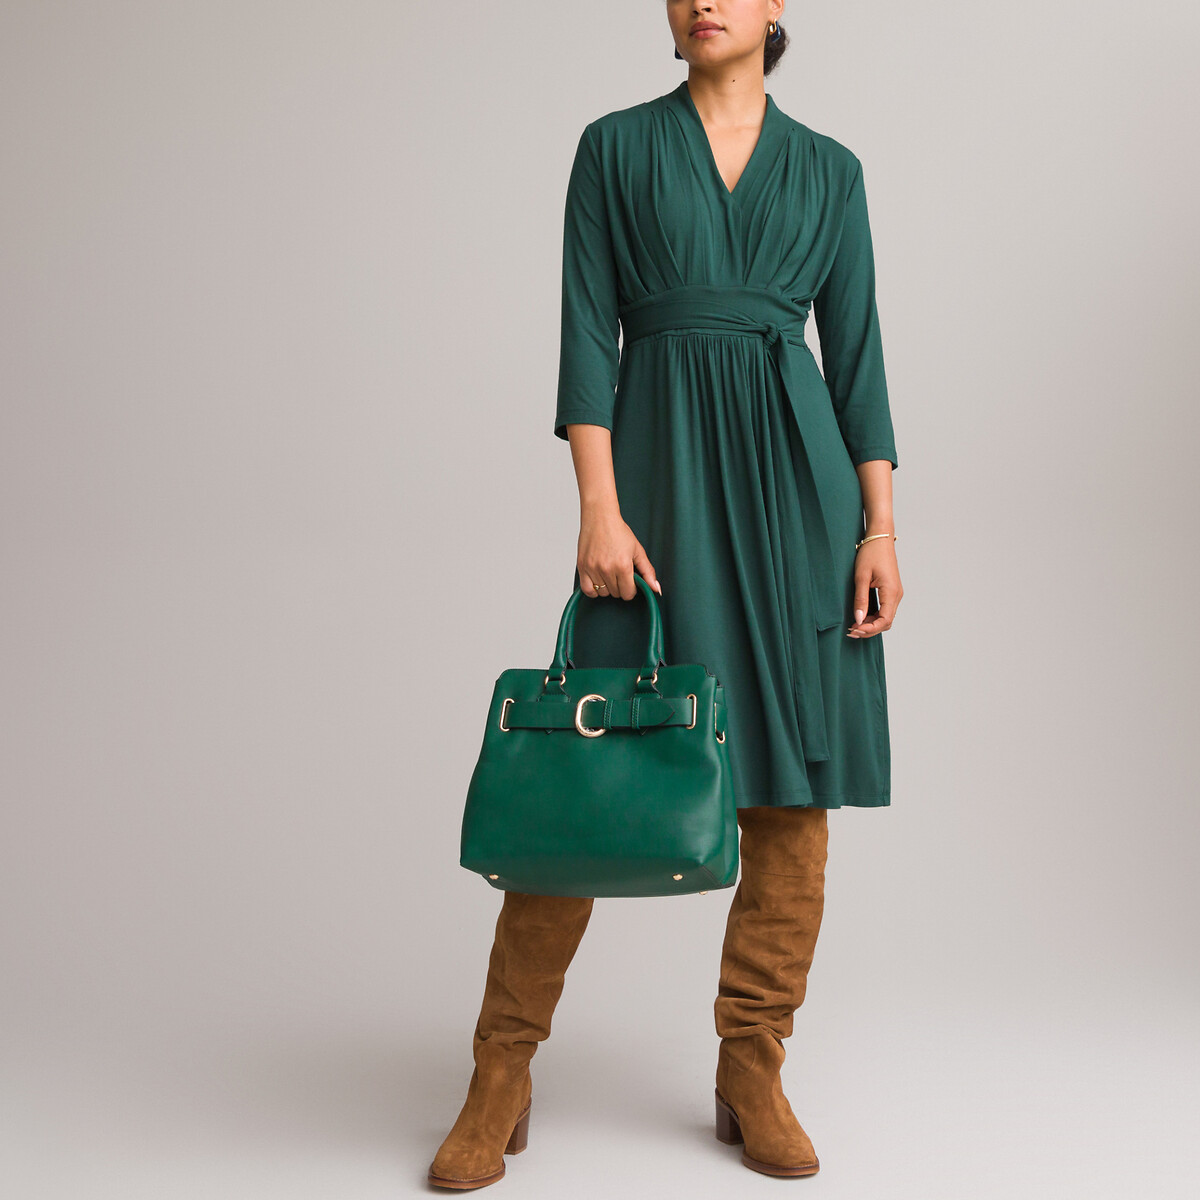 Платье ANNE WEYBURN Платье Расклешенное из струящегося трикотажа с рукавами 34 54 зеленый, размер 54 - фото 1